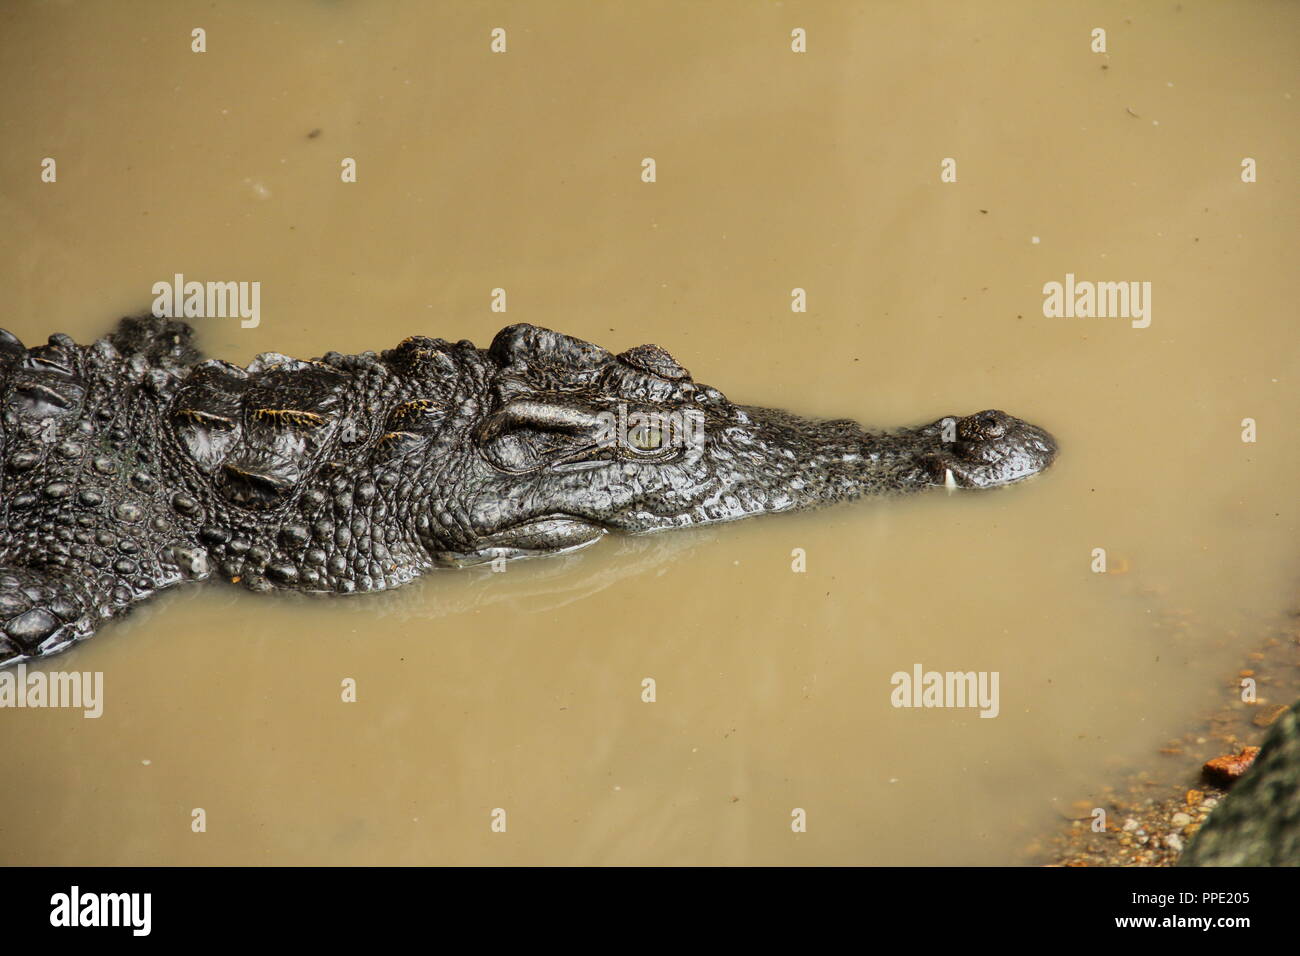 Closeup picture of a Siamese Crocodile (Crocodylus siamensis) floating in still water Stock Photo